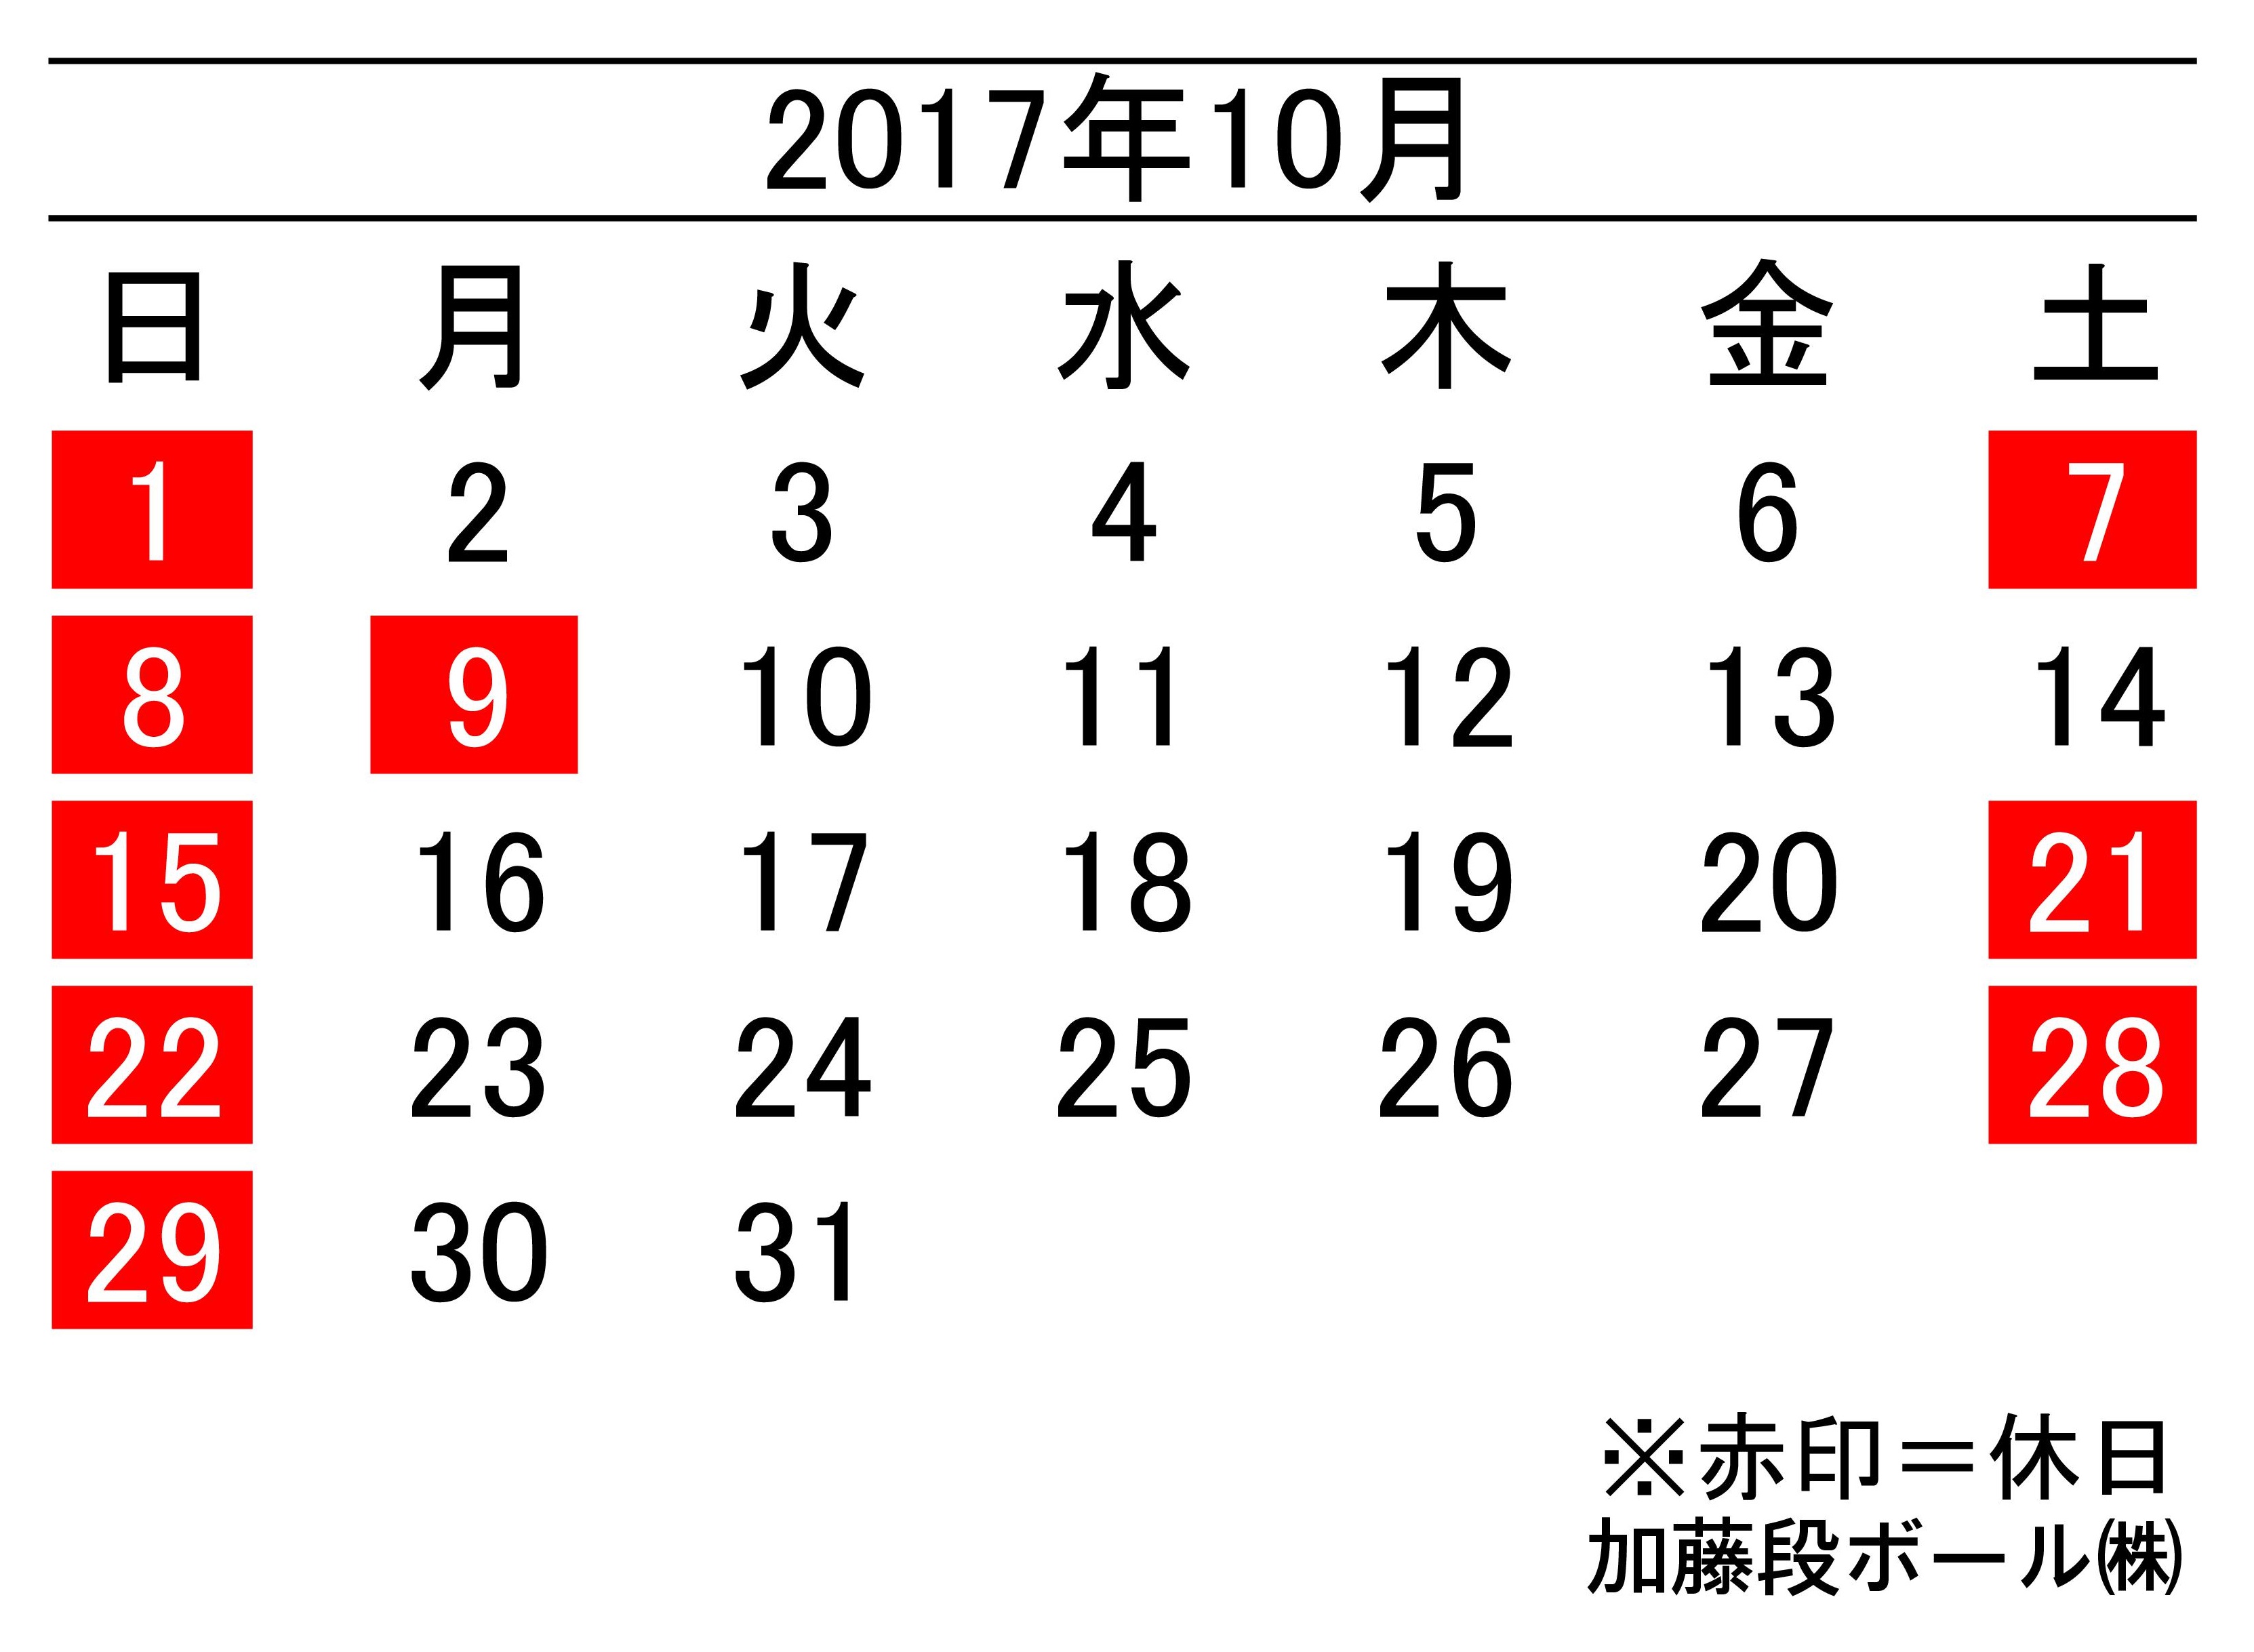 17年10月度営業日カレンダー 加藤段ボール株式会社 千葉 福島 神奈川を中心に段ボール製品 梱包資材の製造と販売